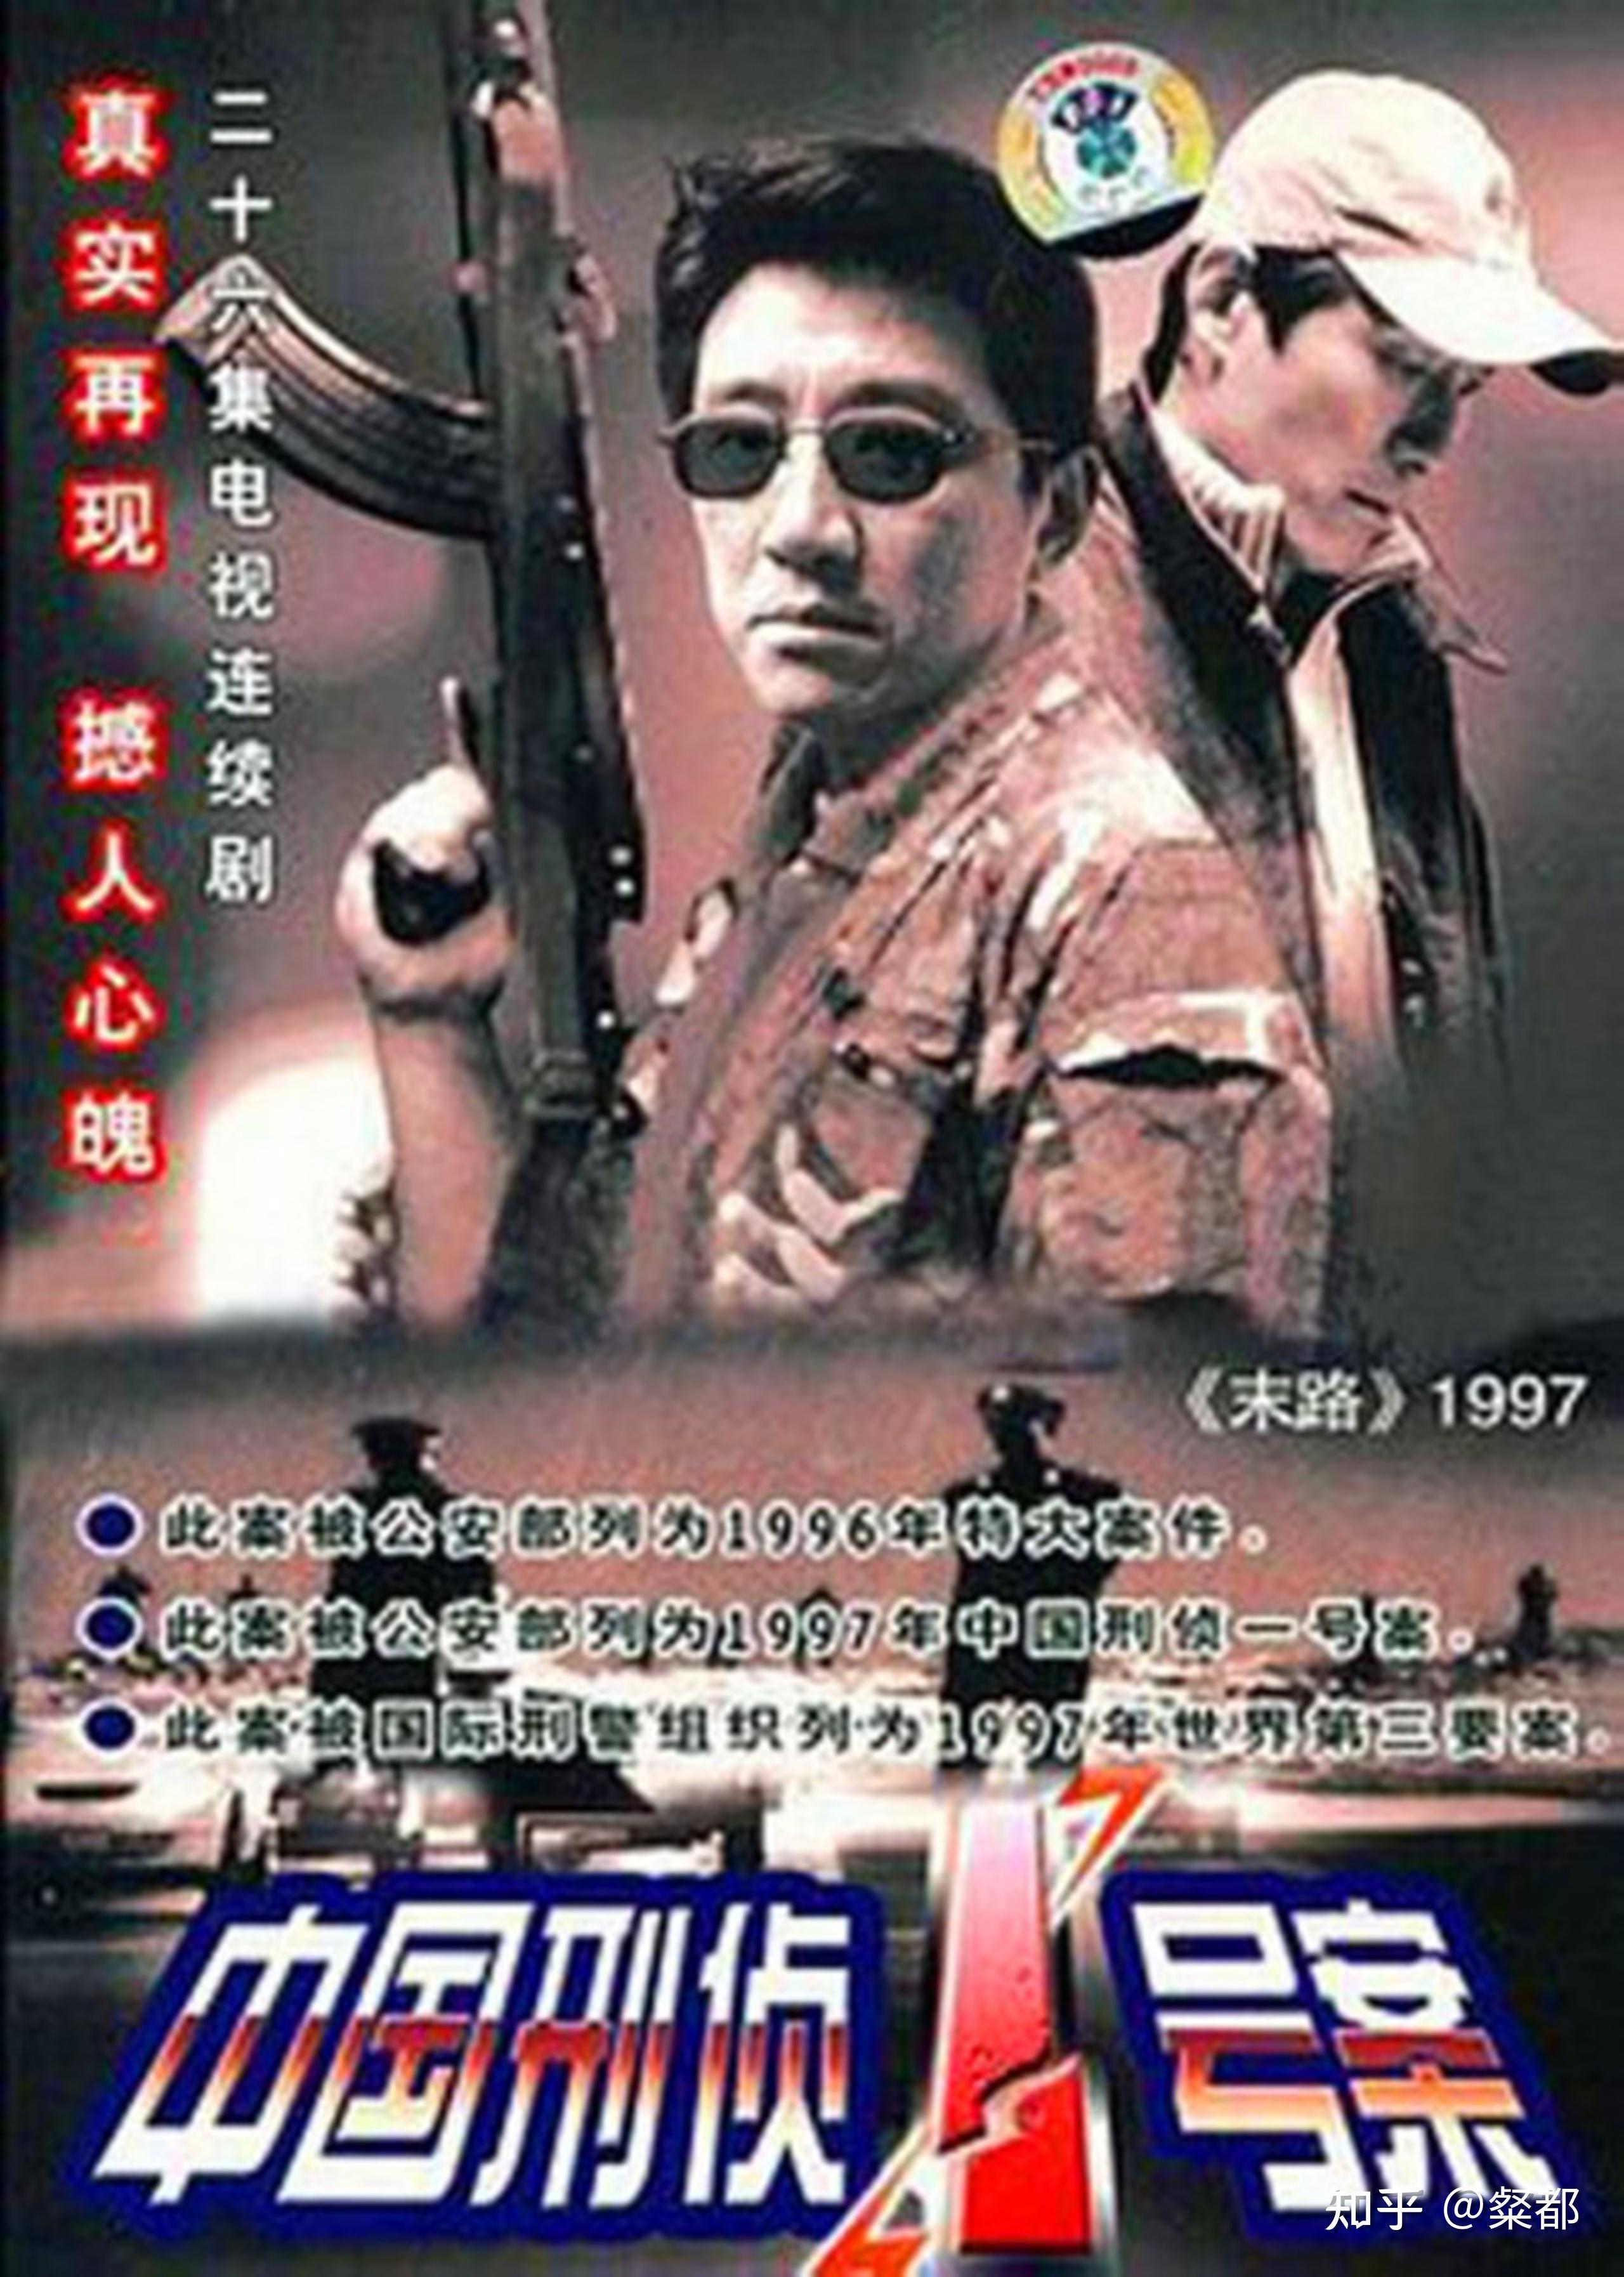 电视剧末路1997中国刑侦一号案白宝山案之角色原型